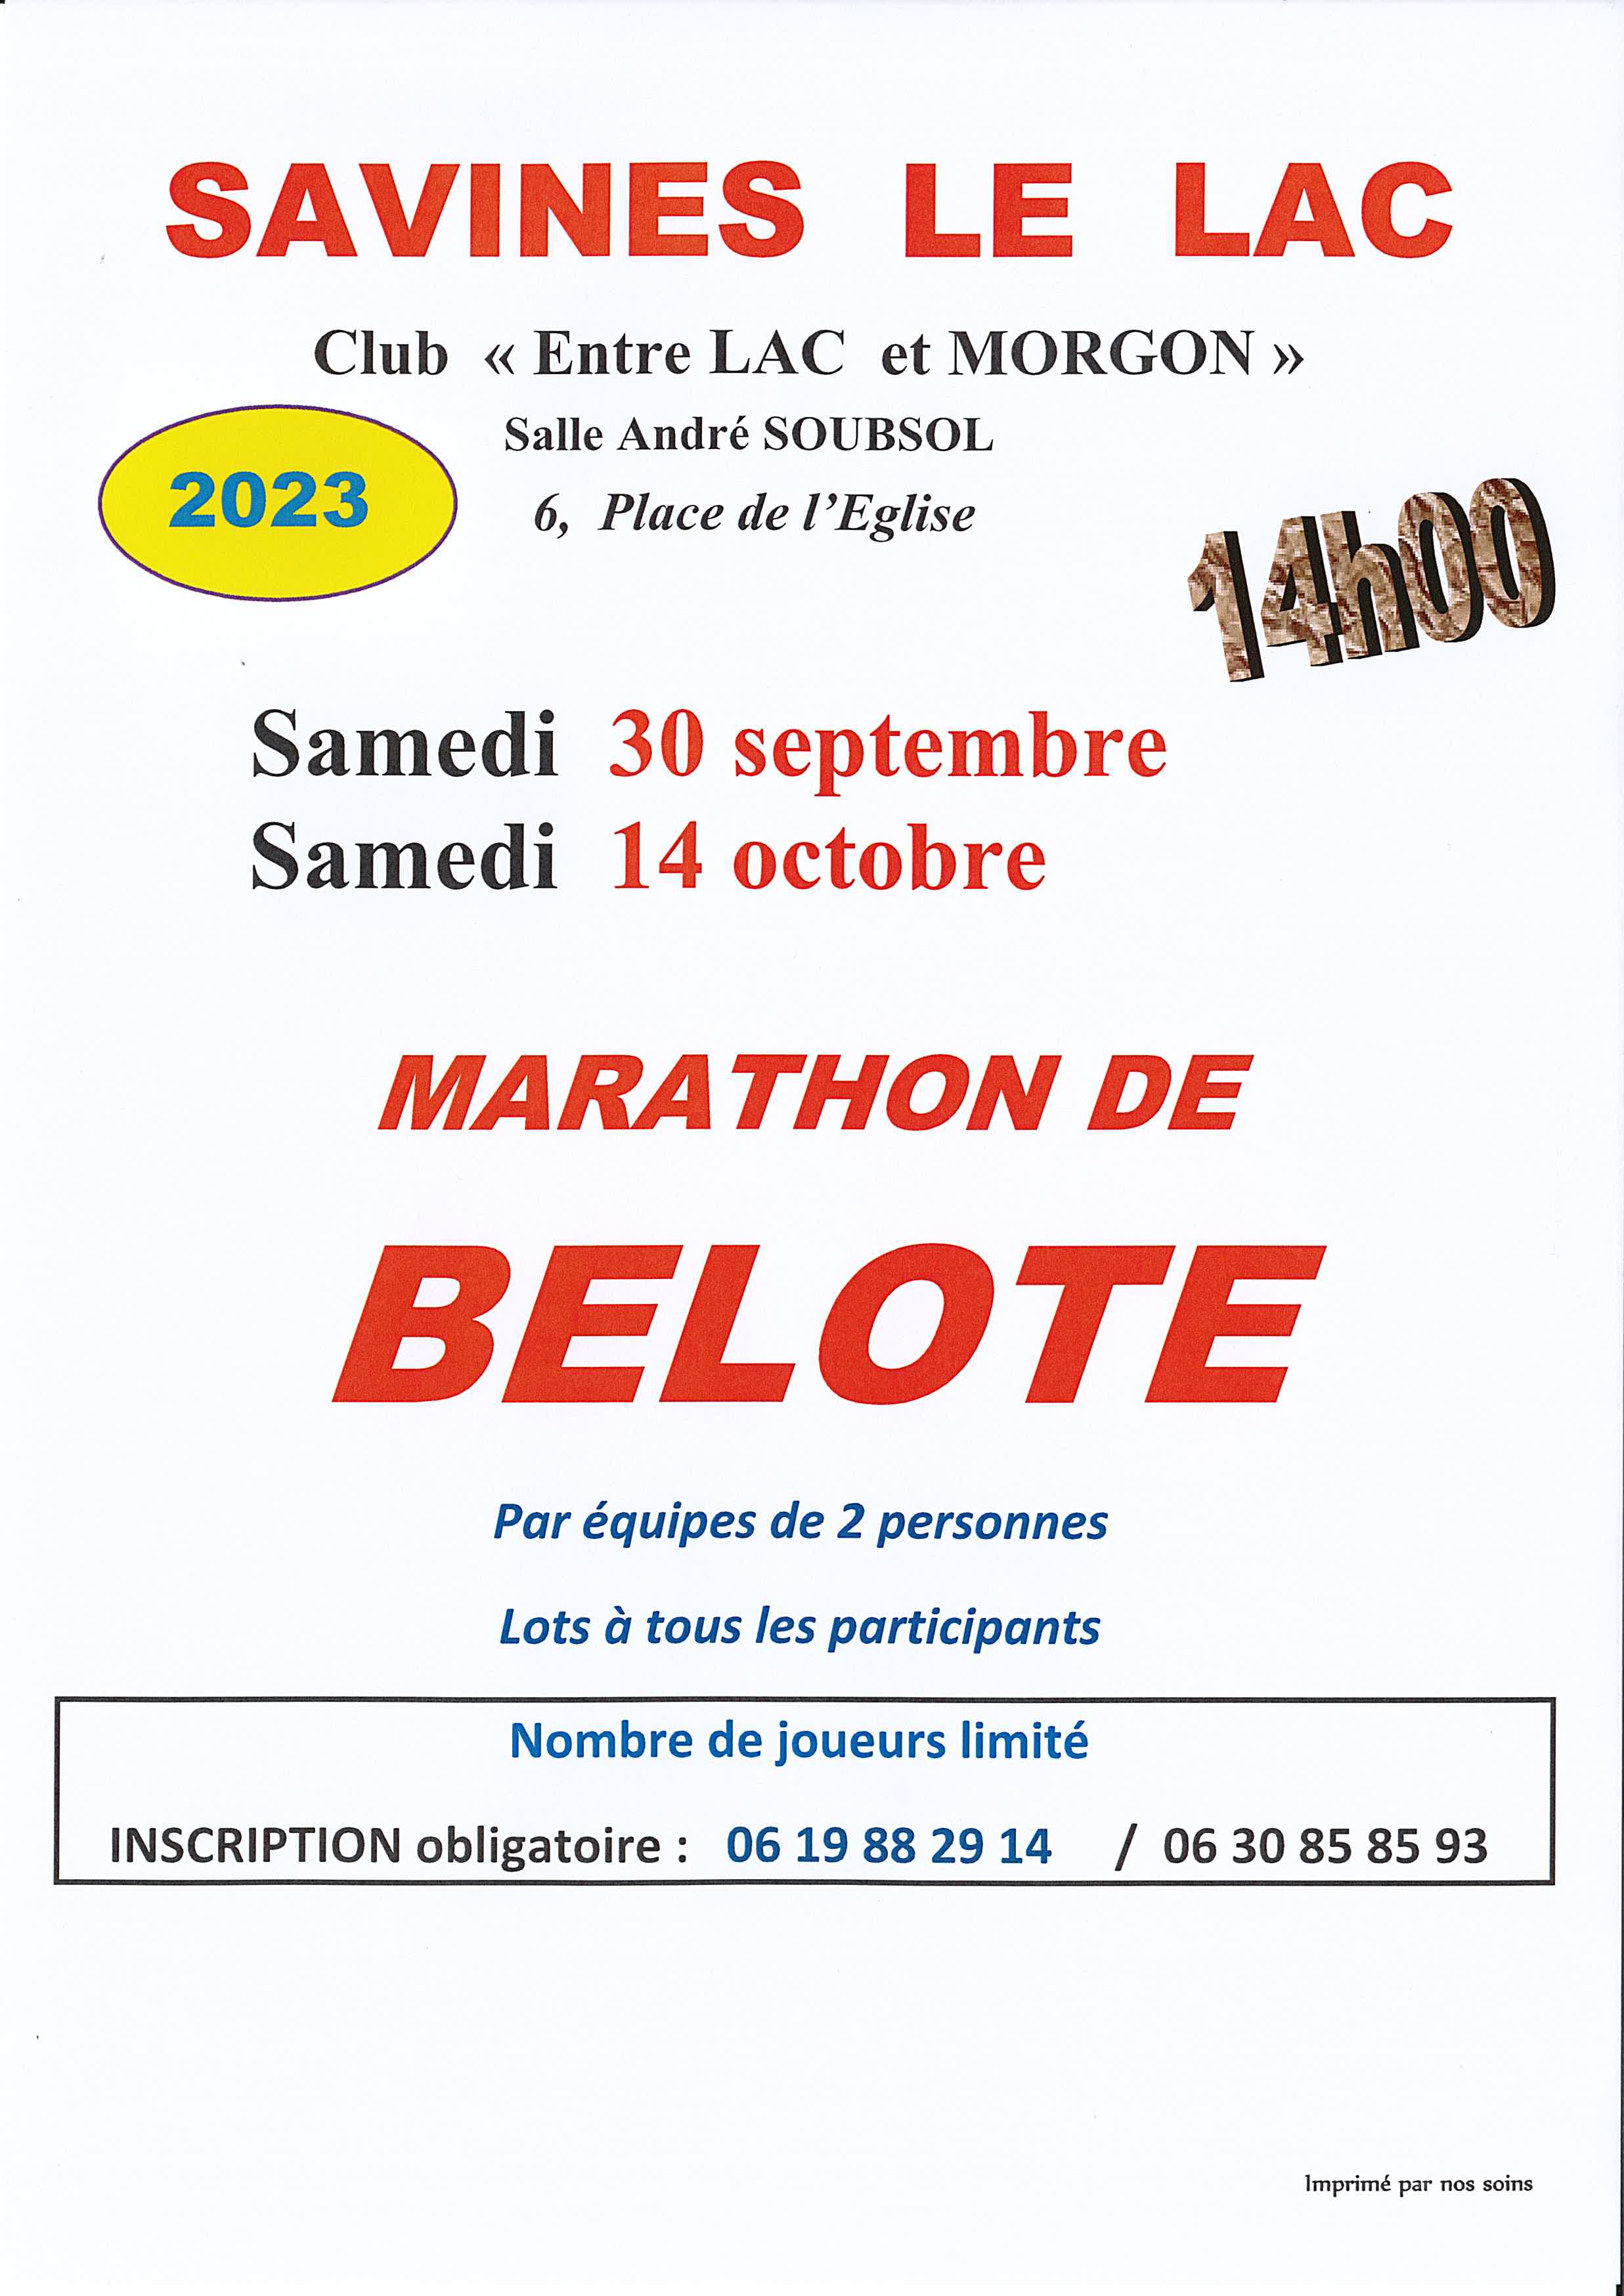 Marathon de belote